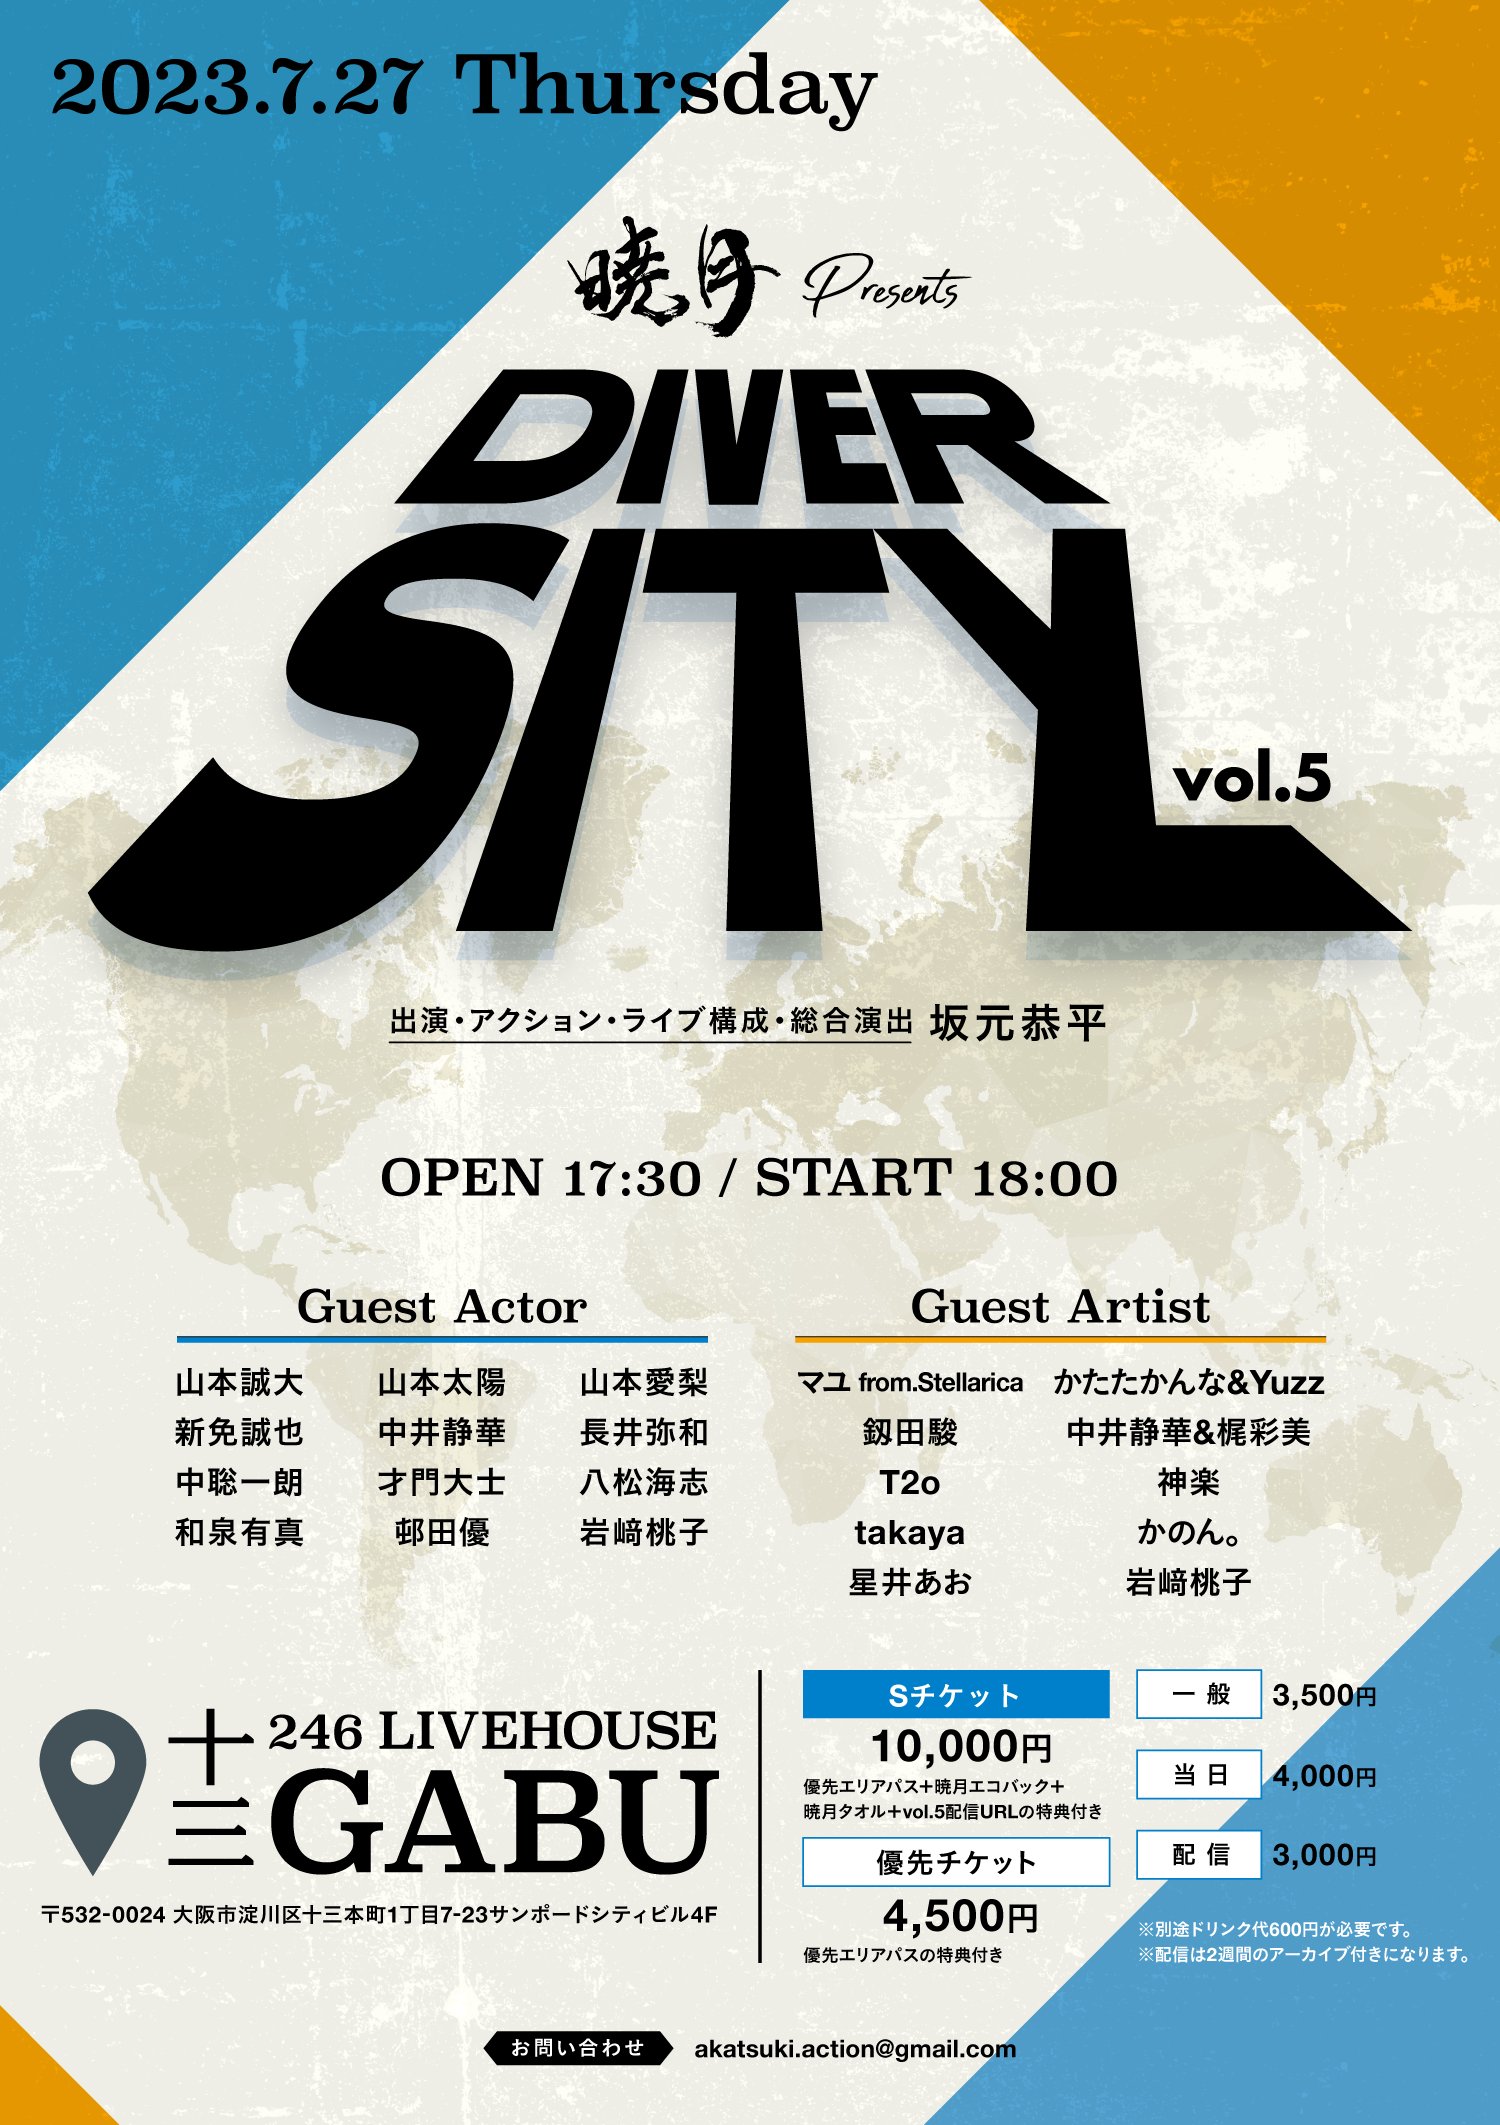 星井あおサポート出演公演(暁月-AKATSUKI-)暁月presents「DIVERSITY vol.5」